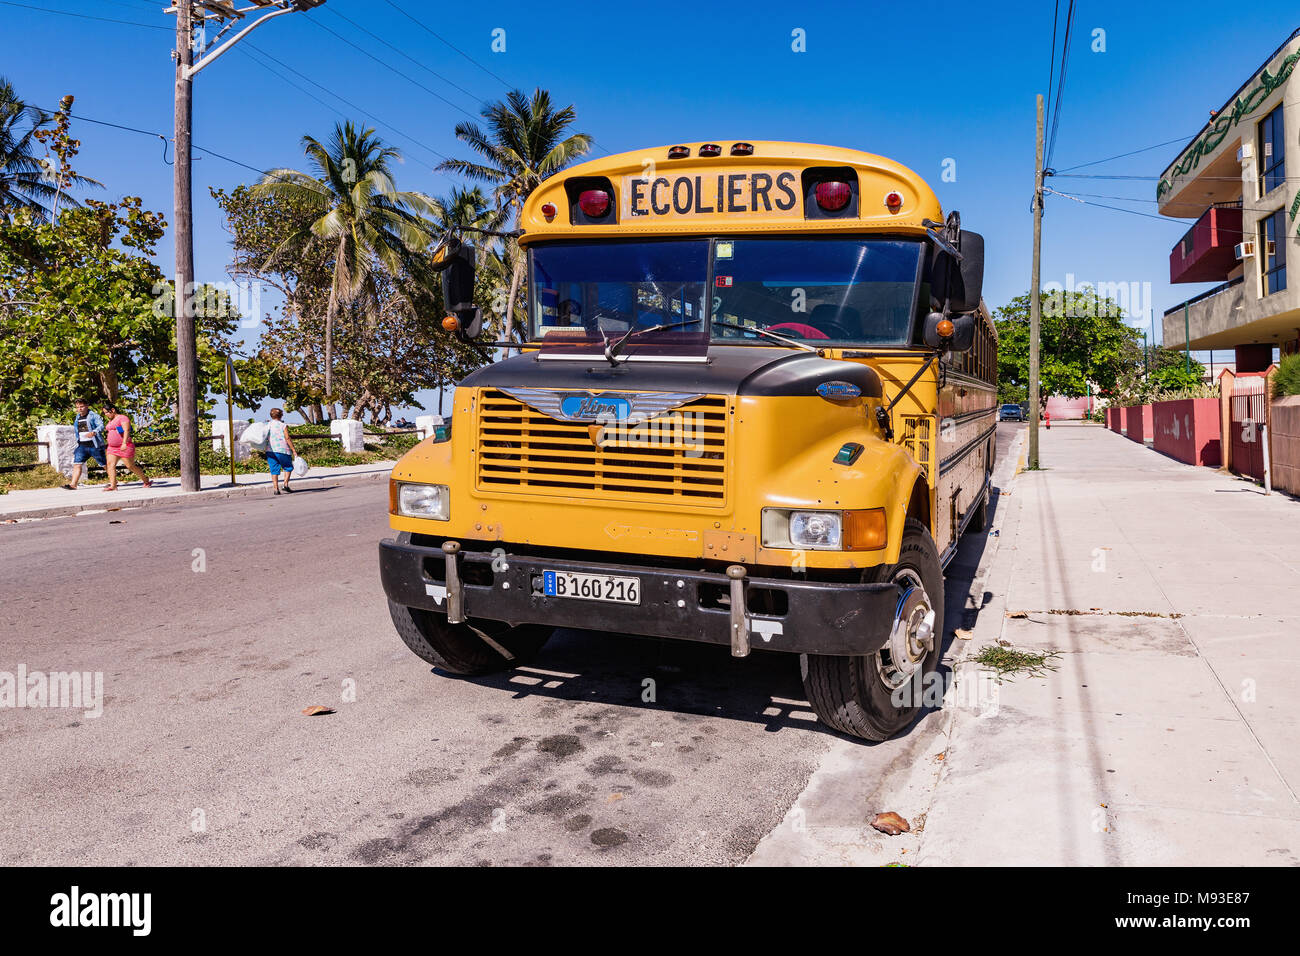 VARADERO, CUBA - MARCH 04, 2018: American school bus in Varadero. Old american school bus on the street. Cuba. Stock Photo